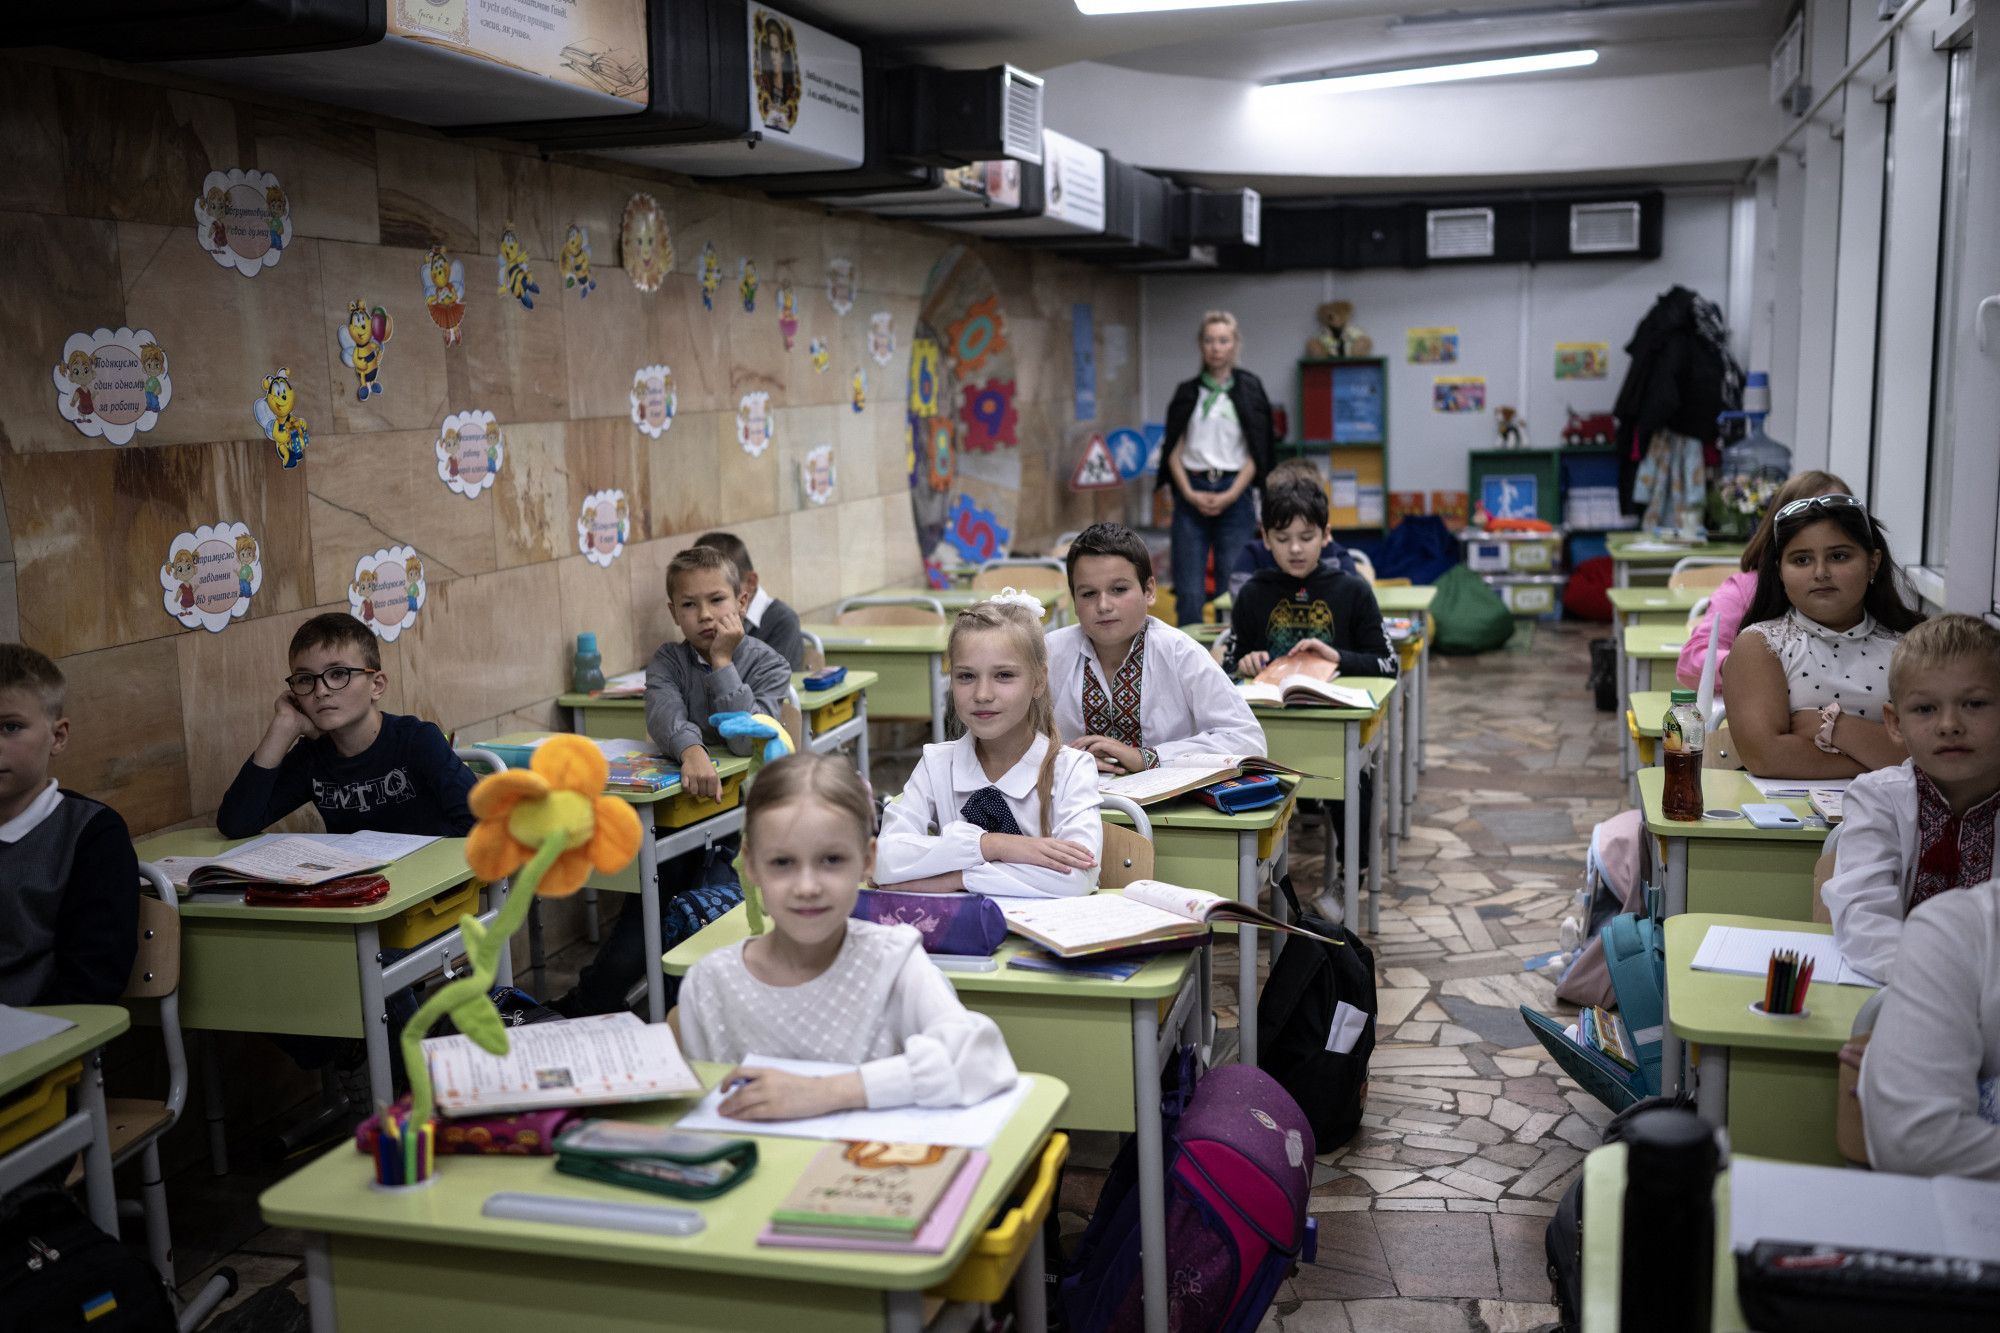 Általános iskolás diákok tanulnak a metróállomások felső szintjén kialakított tantermekben az orosz-ukrán háború közepette Harkivban 2023. szeptember 15-én. A harkivi önkormányzat által megcsinált tantermekben a város különböző iskoláiból több mint ezer gyerek tanul és sportol.